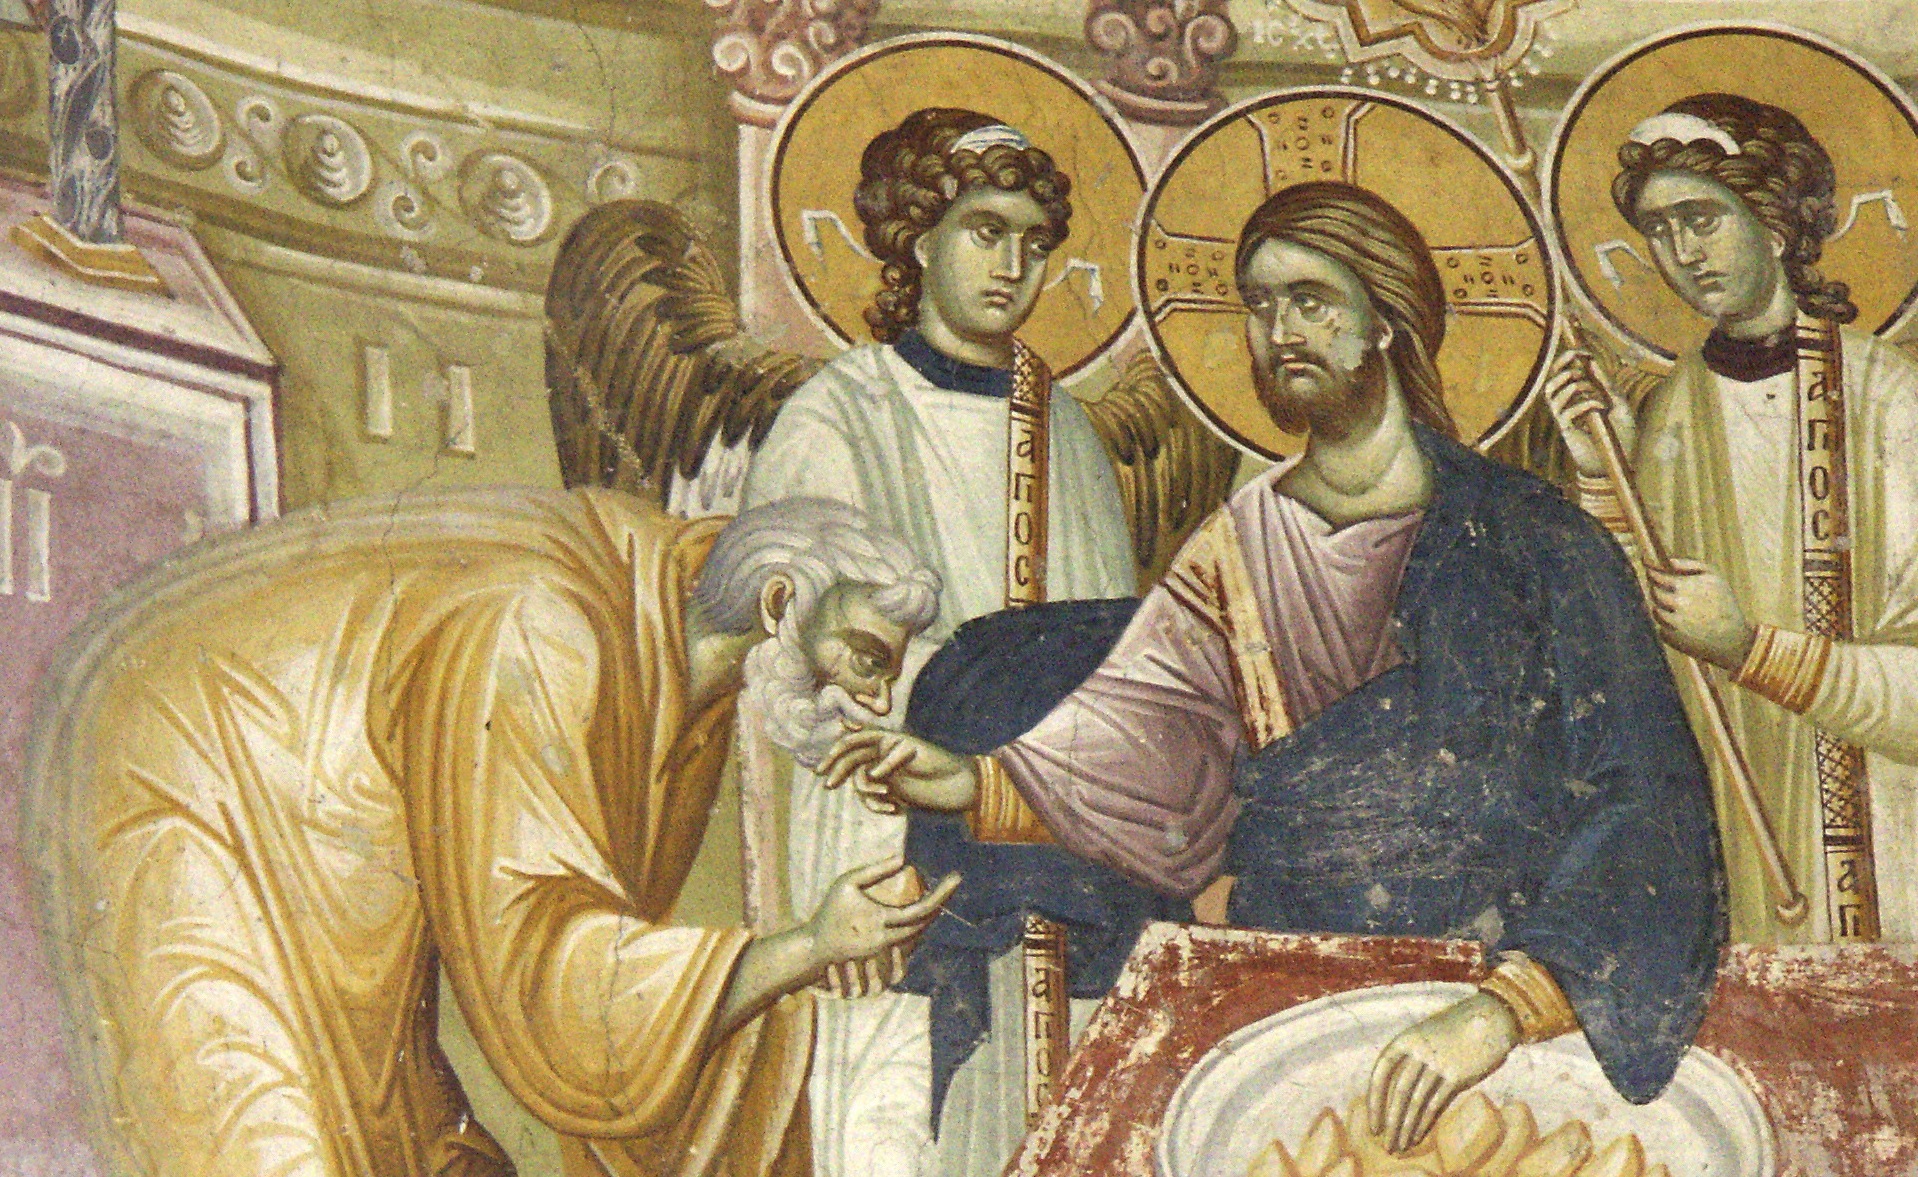 Евхаристия, фреска, 14 в. Монастырь свм. Георгия, Северная Македония